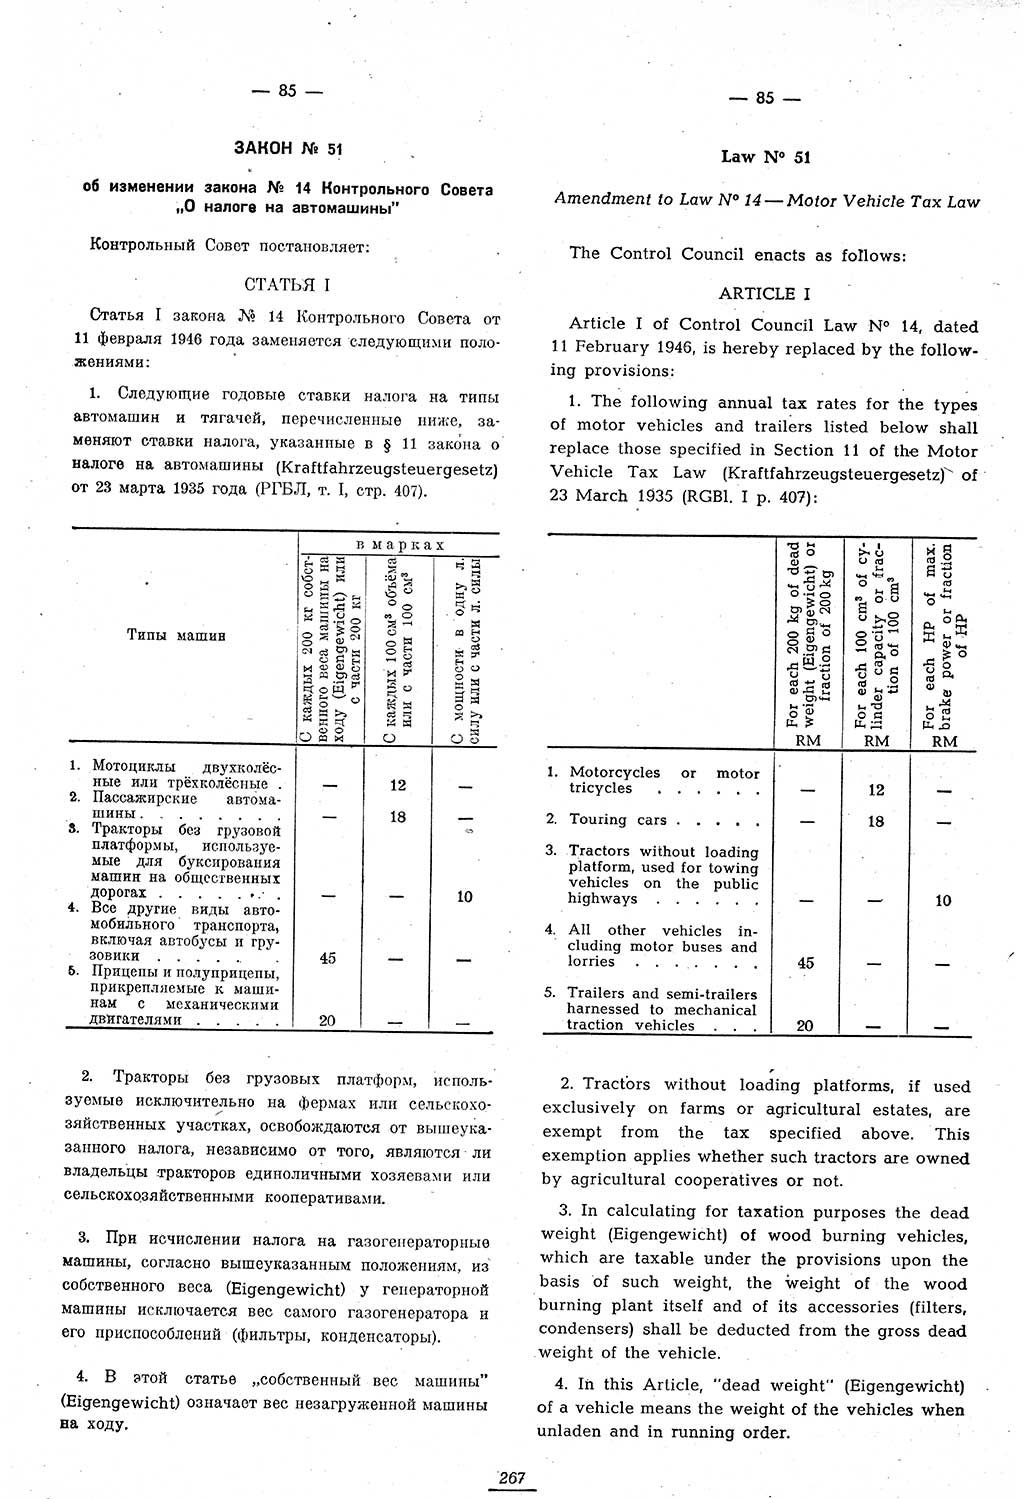 Amtsblatt des Kontrollrats (ABlKR) in Deutschland 1947, Seite 267/1 (ABlKR Dtl. 1947, S. 267/1)